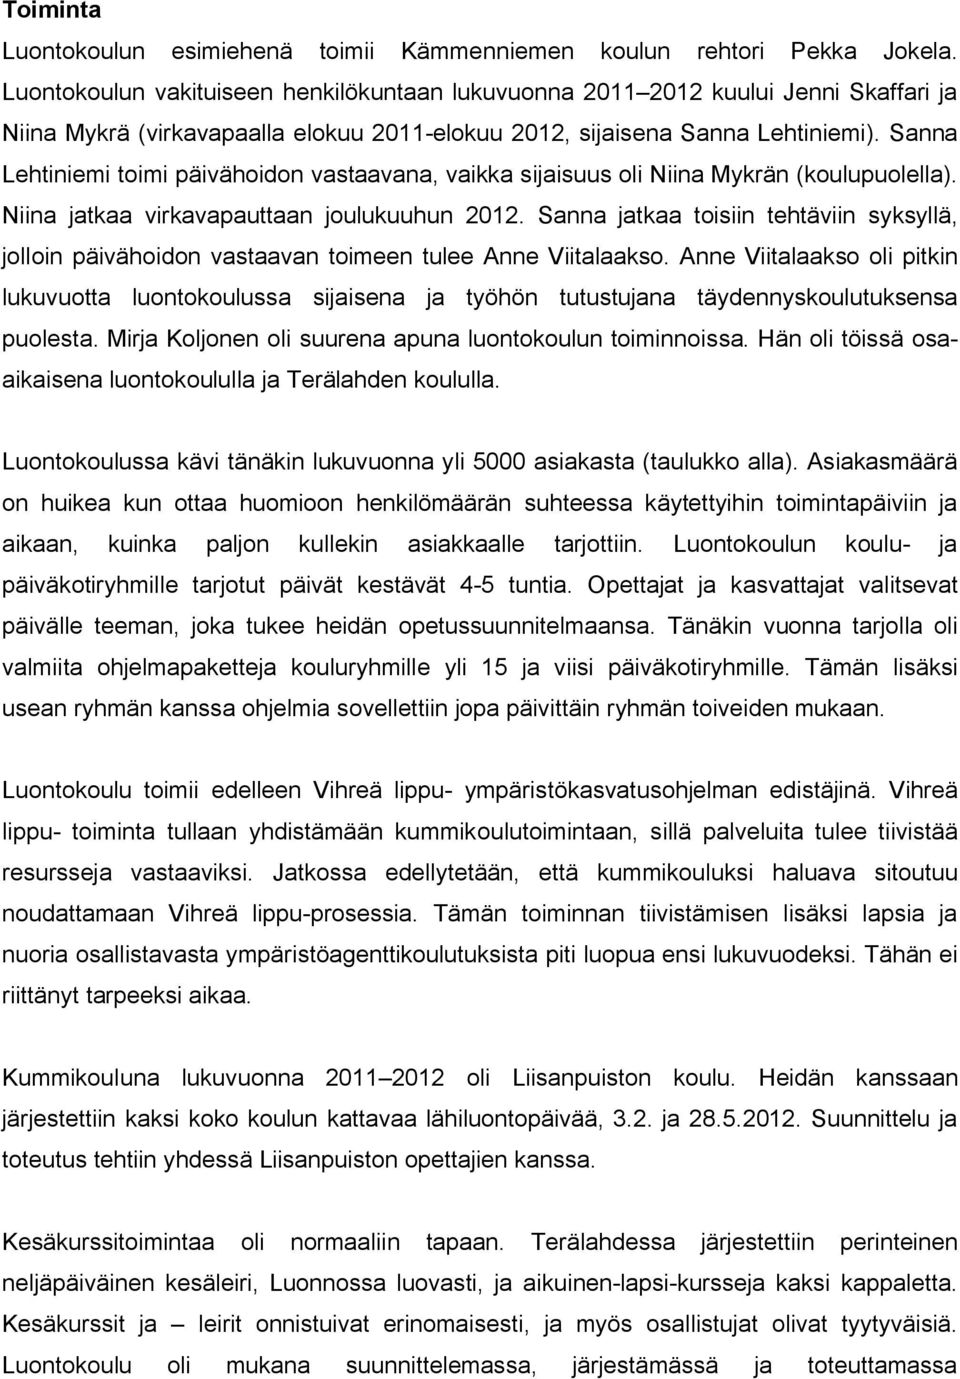 Sanna Lehtiniemi toimi päivähoidon vastaavana, vaikka sijaisuus oli Niina Mykrän (koulupuolella). Niina jatkaa virkavapauttaan joulukuuhun 2012.